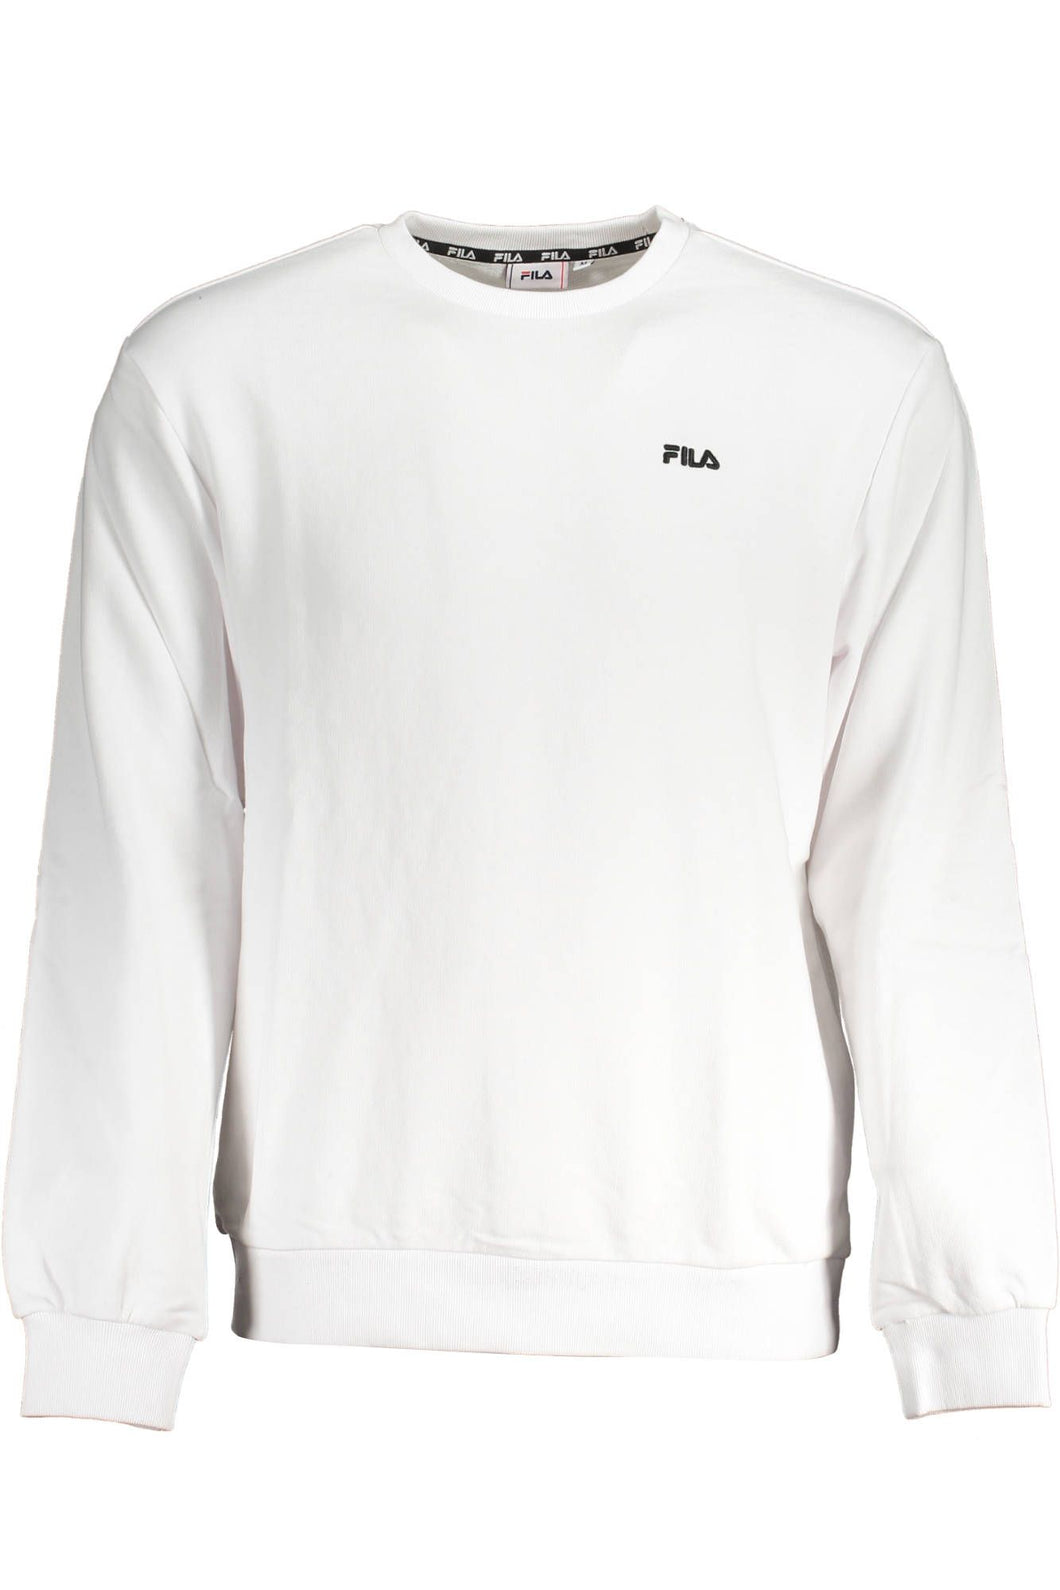 Fila White Cotton Sweater